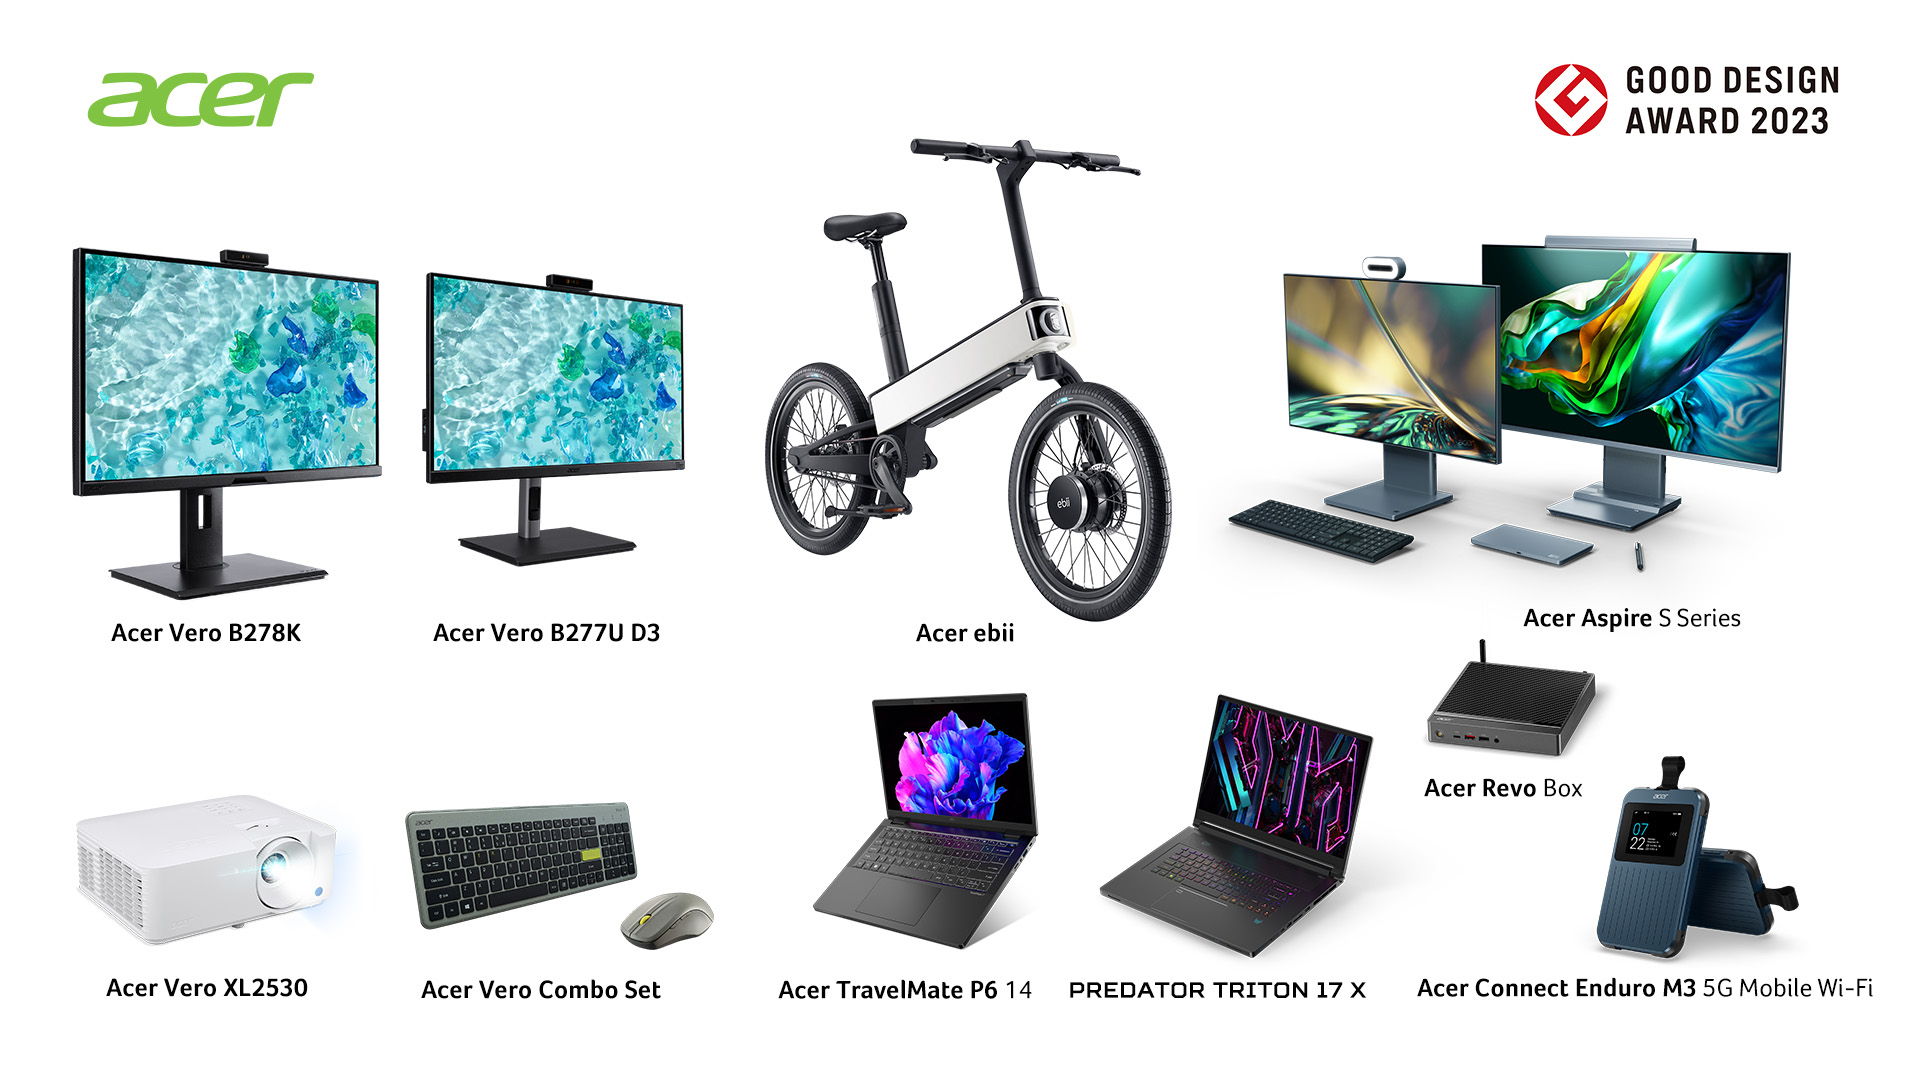 宏碁 ebii 電動輔助自行車及多款電腦產品獲 2023 年 Good Design設計大獎